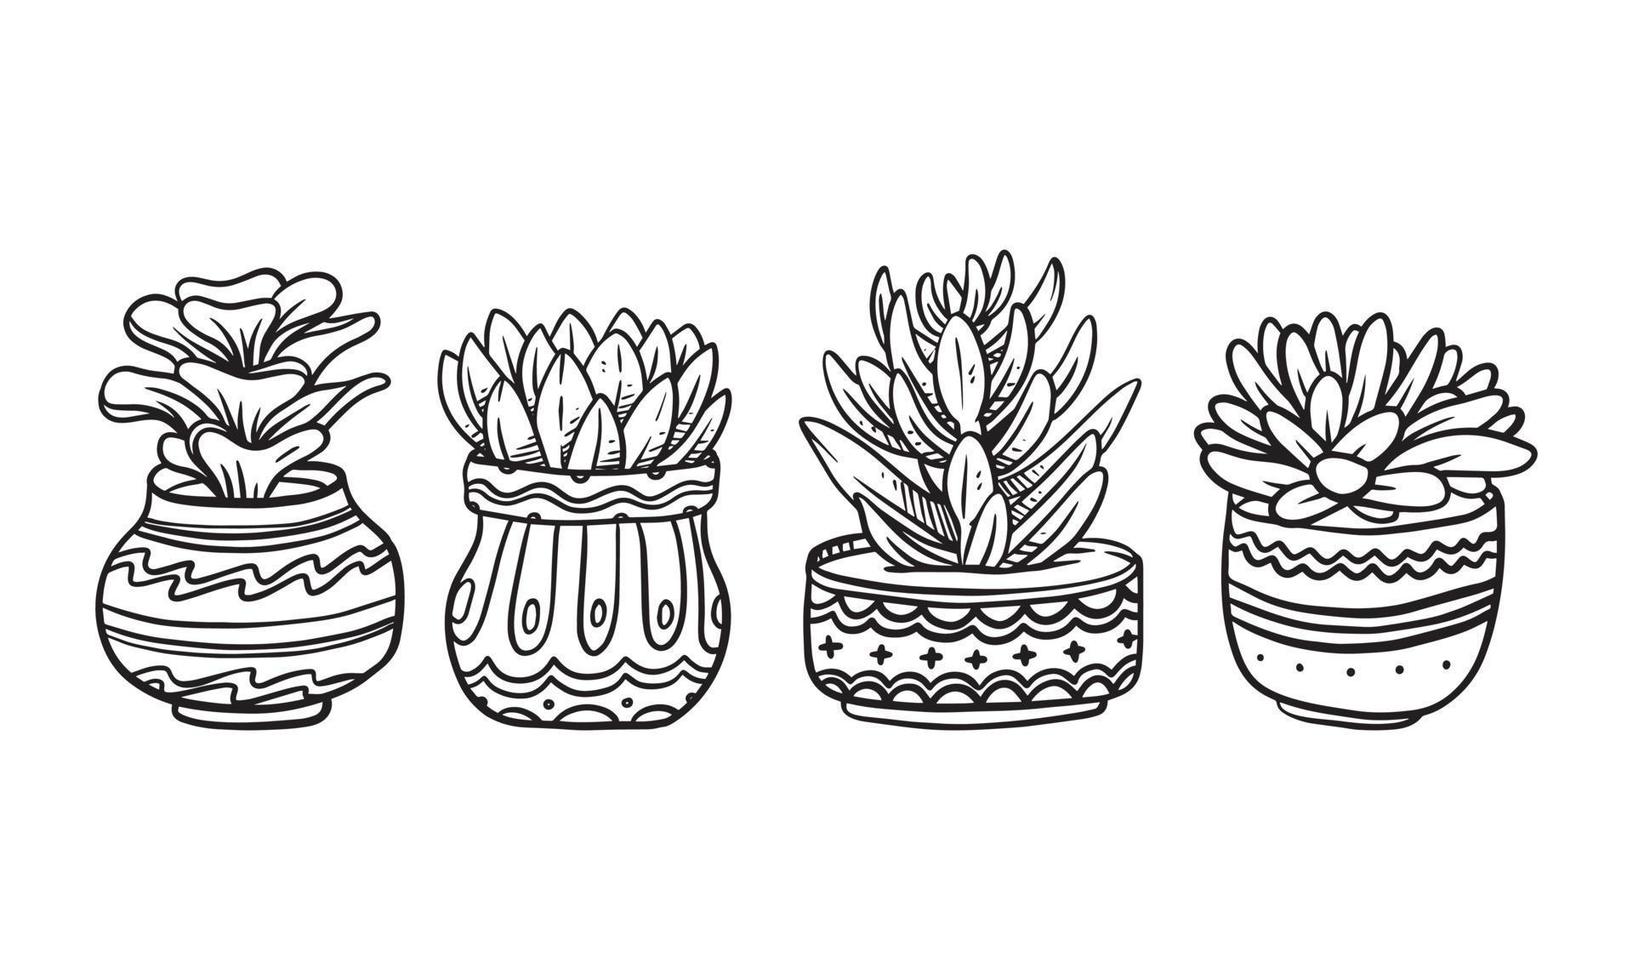 set di illustrazione vettoriale disegnata a mano di piante in vaso, elementi grafici isolati di piante per il design, pianta succulenta con foglie illustrazione per creare un design romantico o vintage.